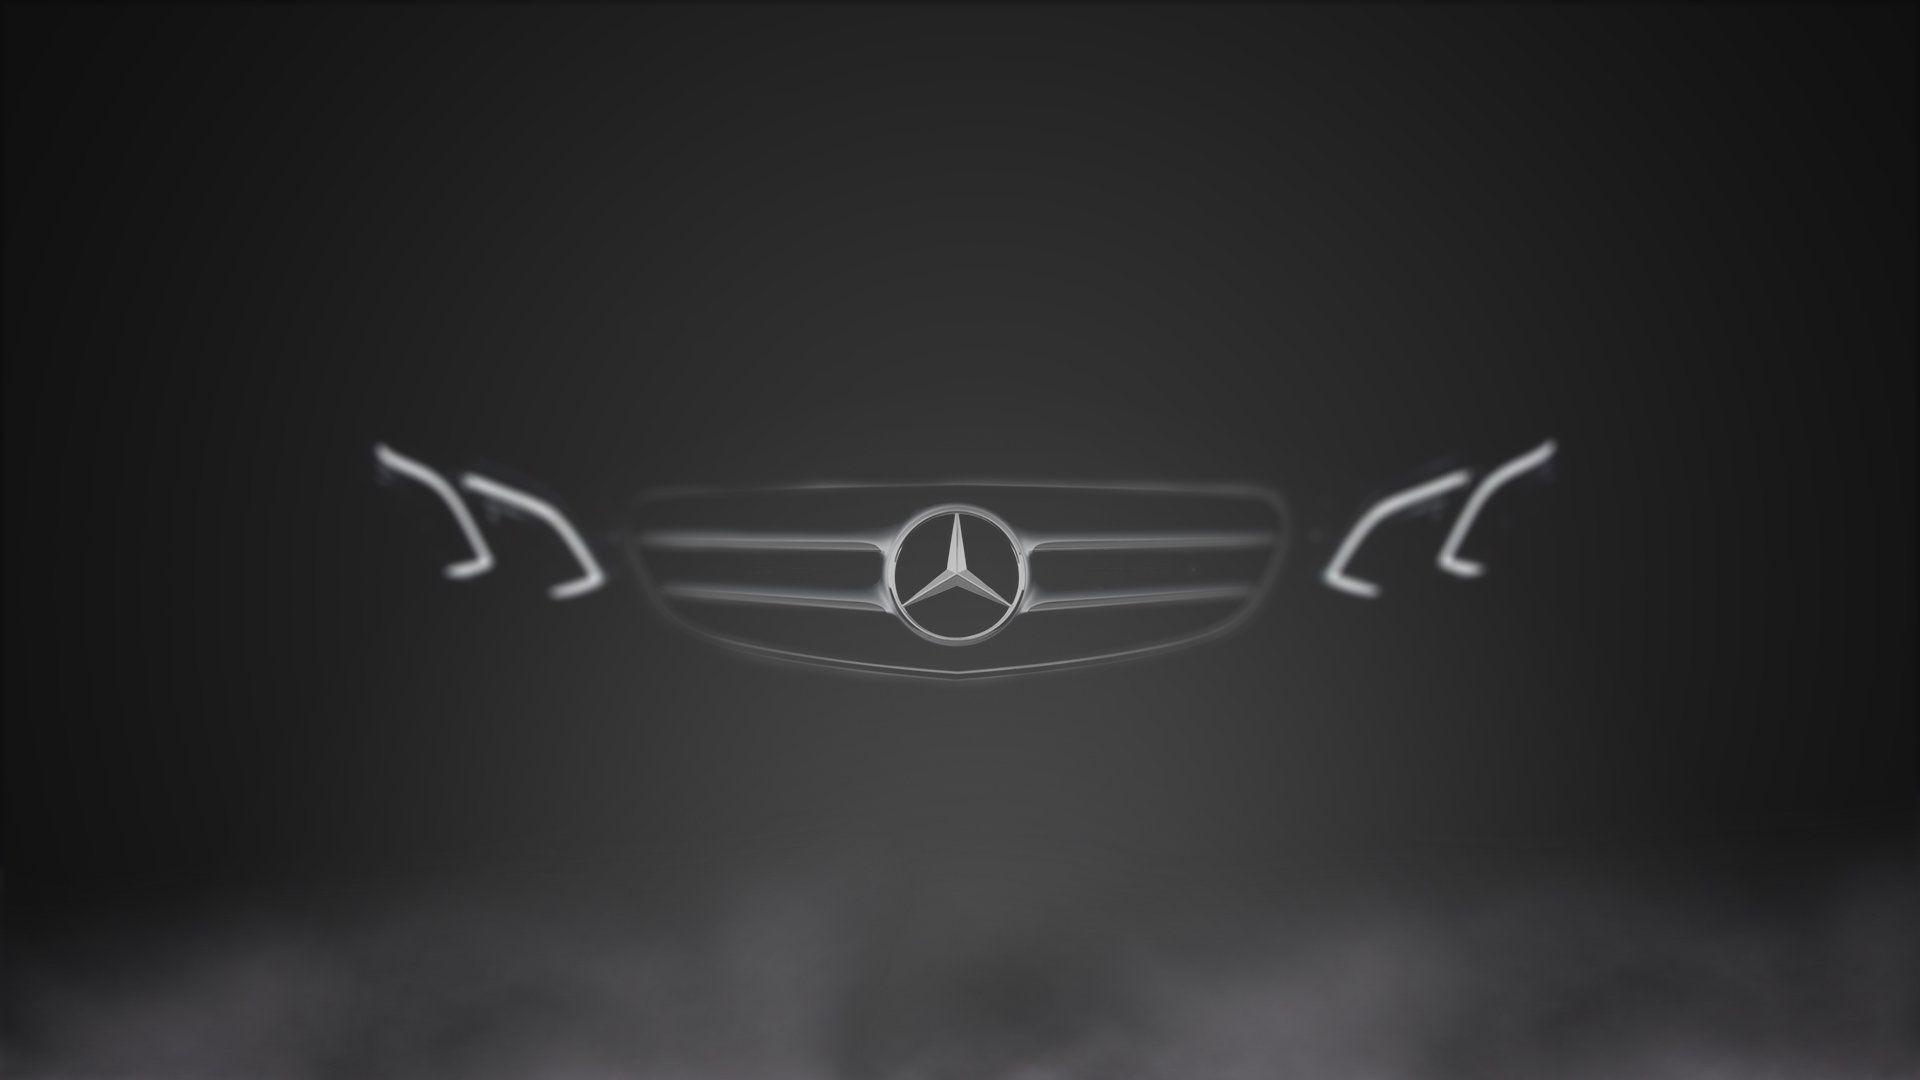 Mercedes Wallpapers  Top Những Hình Ảnh Đẹp